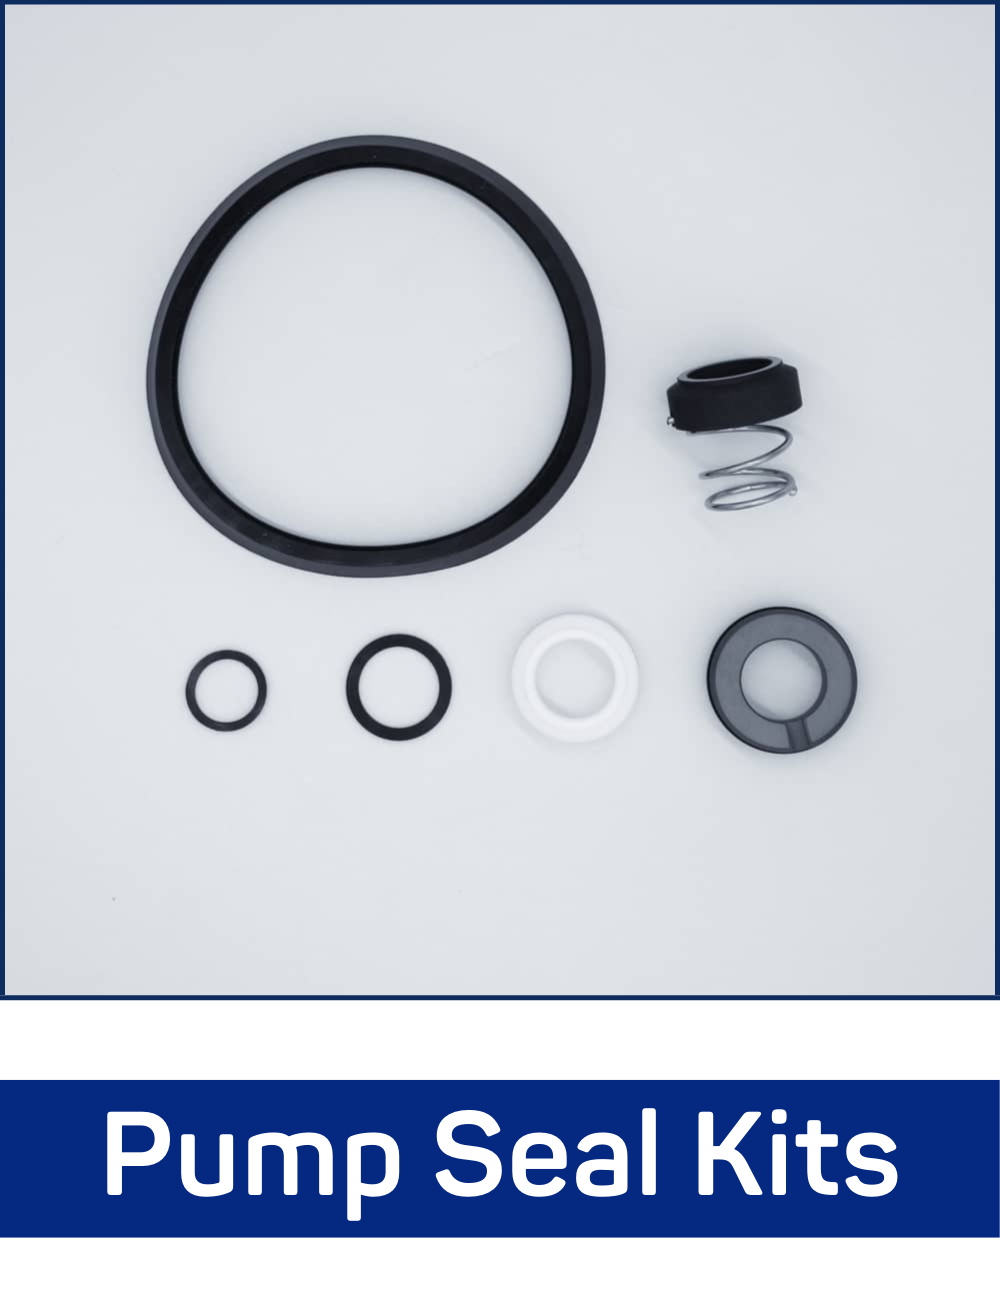 Pump Seal Kits